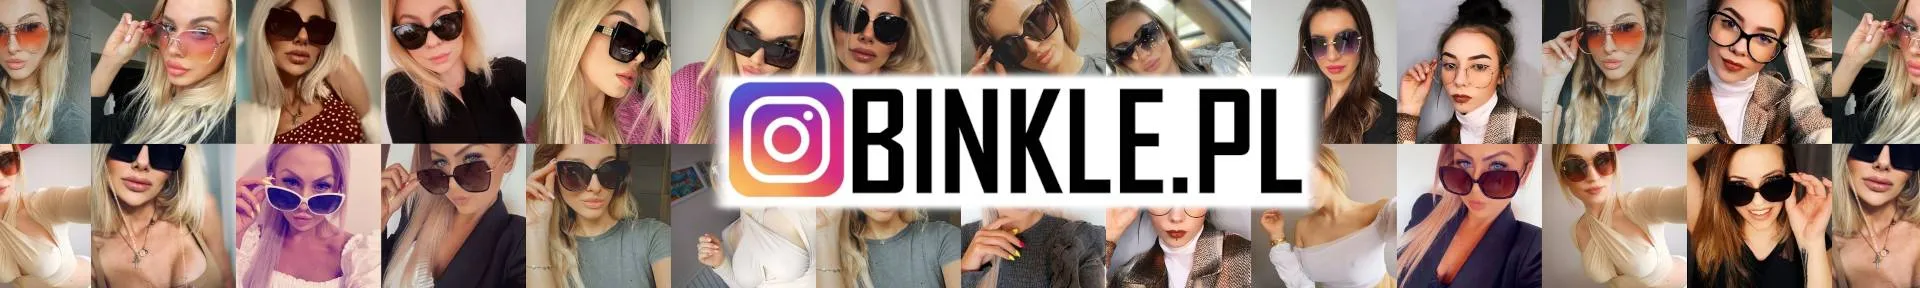 Instagram BINKLE - zobacz kolekcję okularów